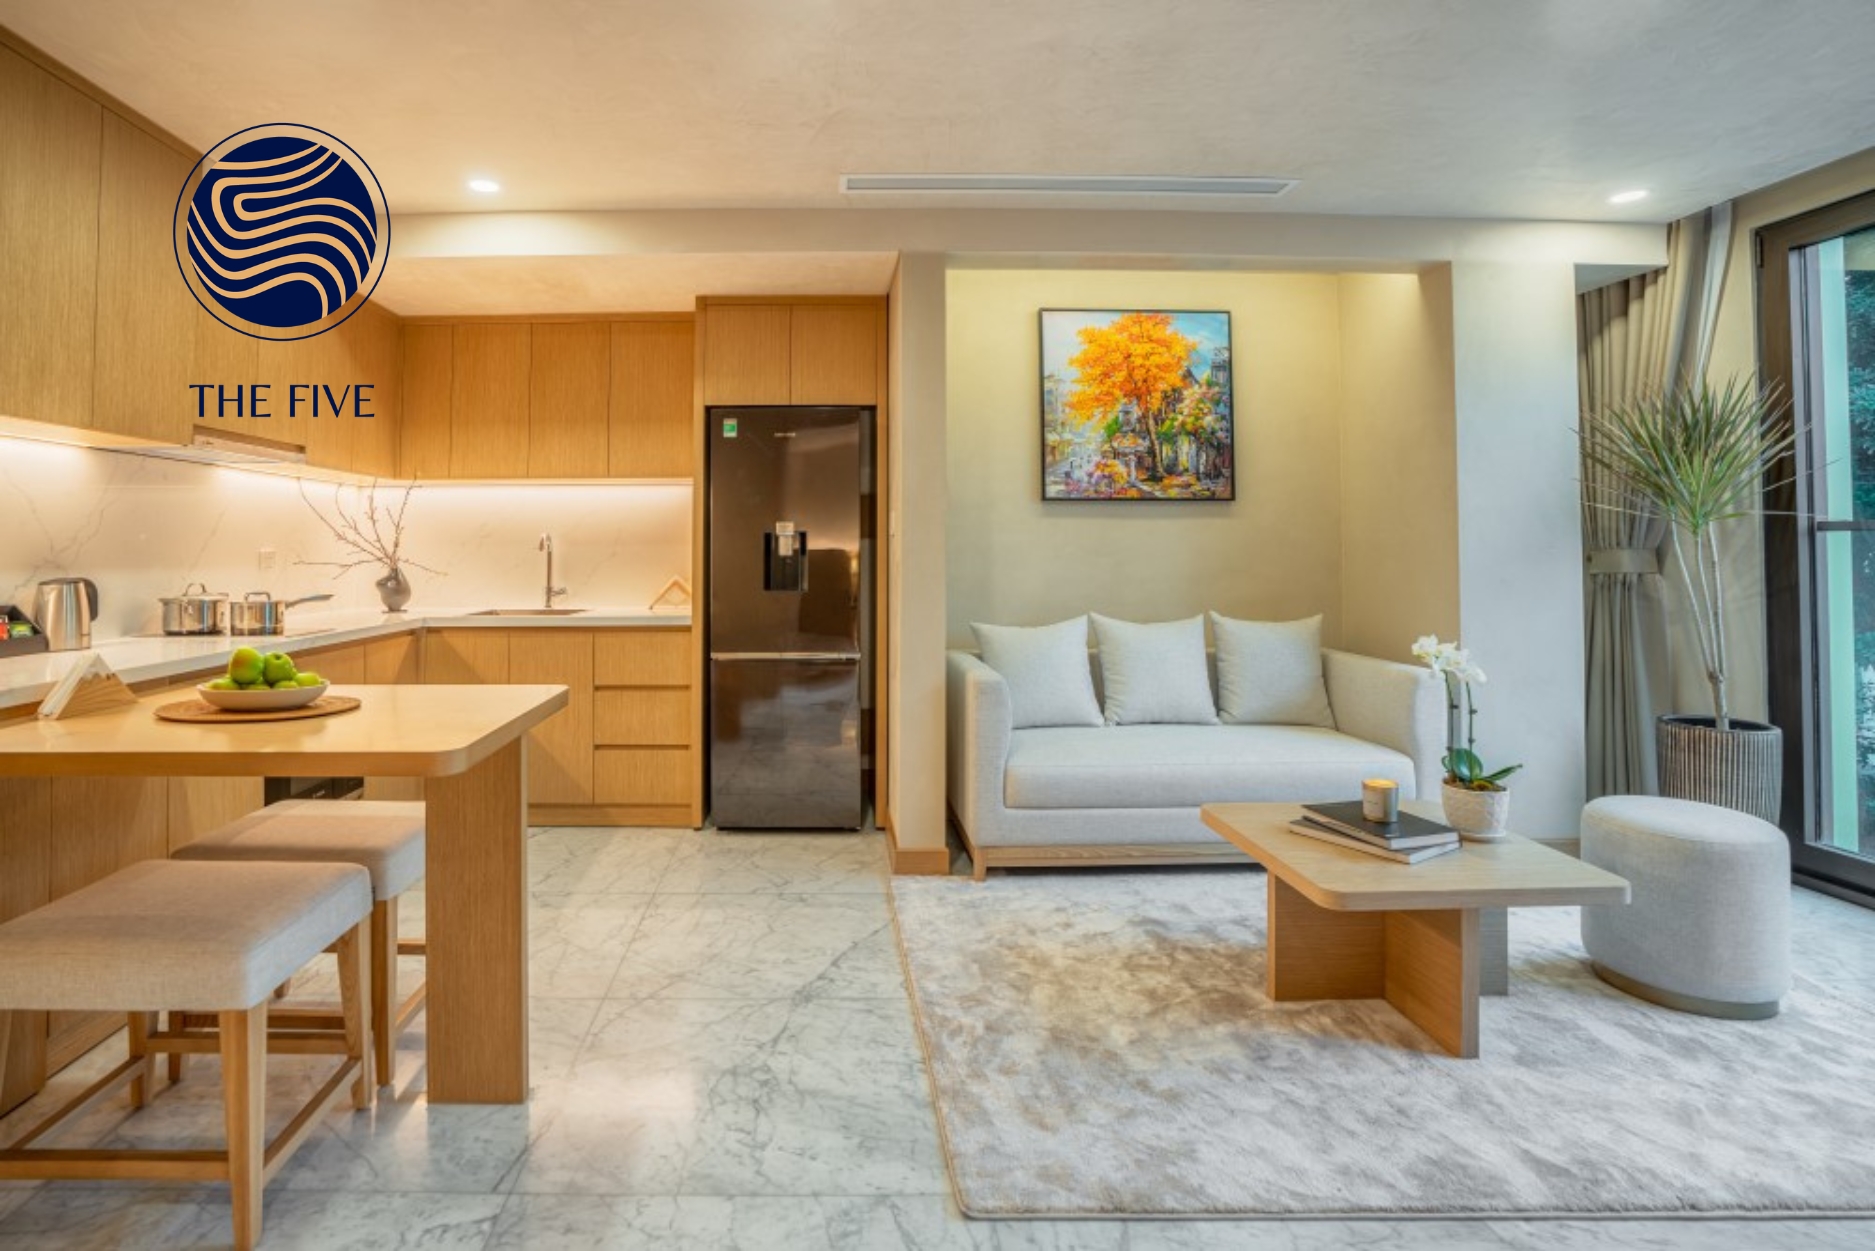 The Five Lilas – khu căn hộ khách sạn cao cấp được phát triển bởi thương hiệu The Five chính thức vận hành tổng đài NEC tại số 9, phố Nguyễn Biểu, quận Ba Đình, Hà Nội